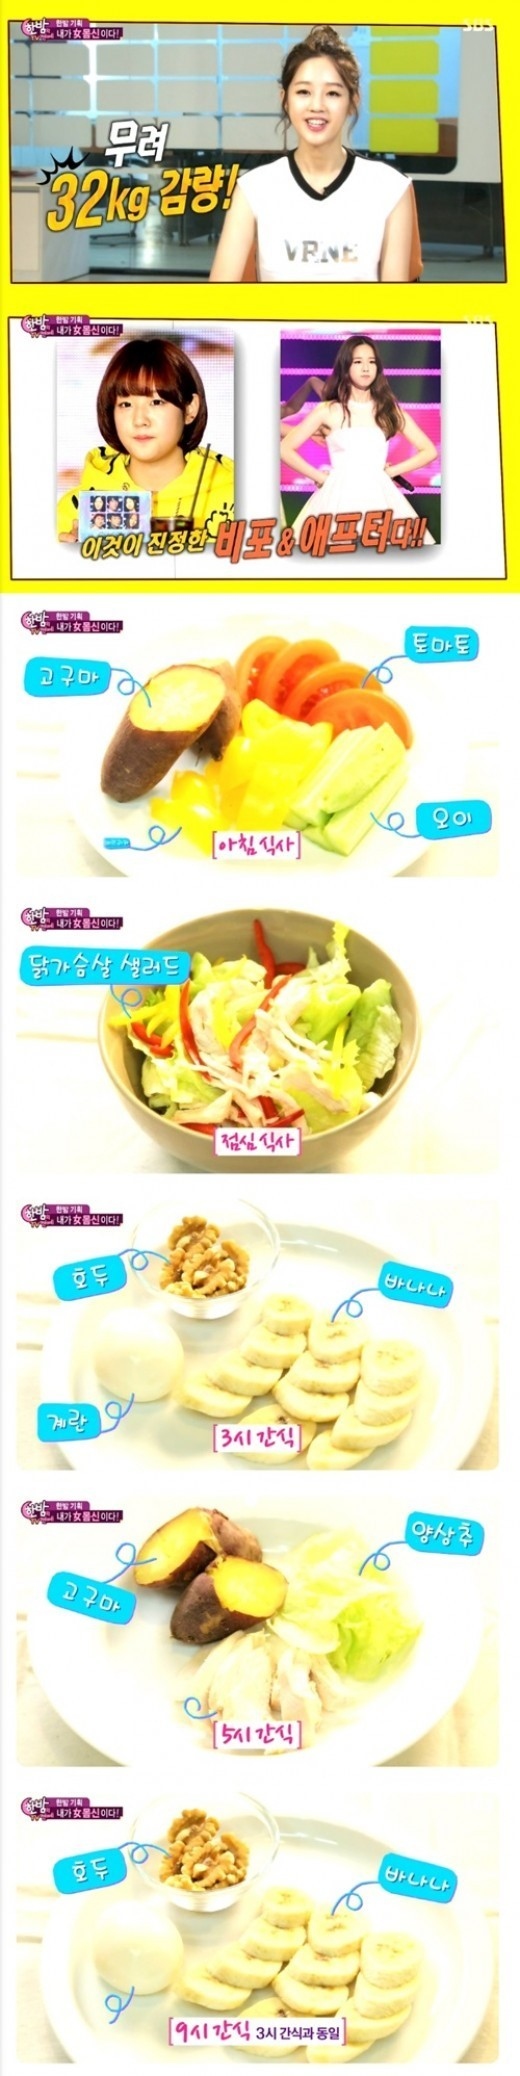 食事 韓国 ダイエット 《短期間で激変！》韓国アイドルのストイックなダイエット&食事法